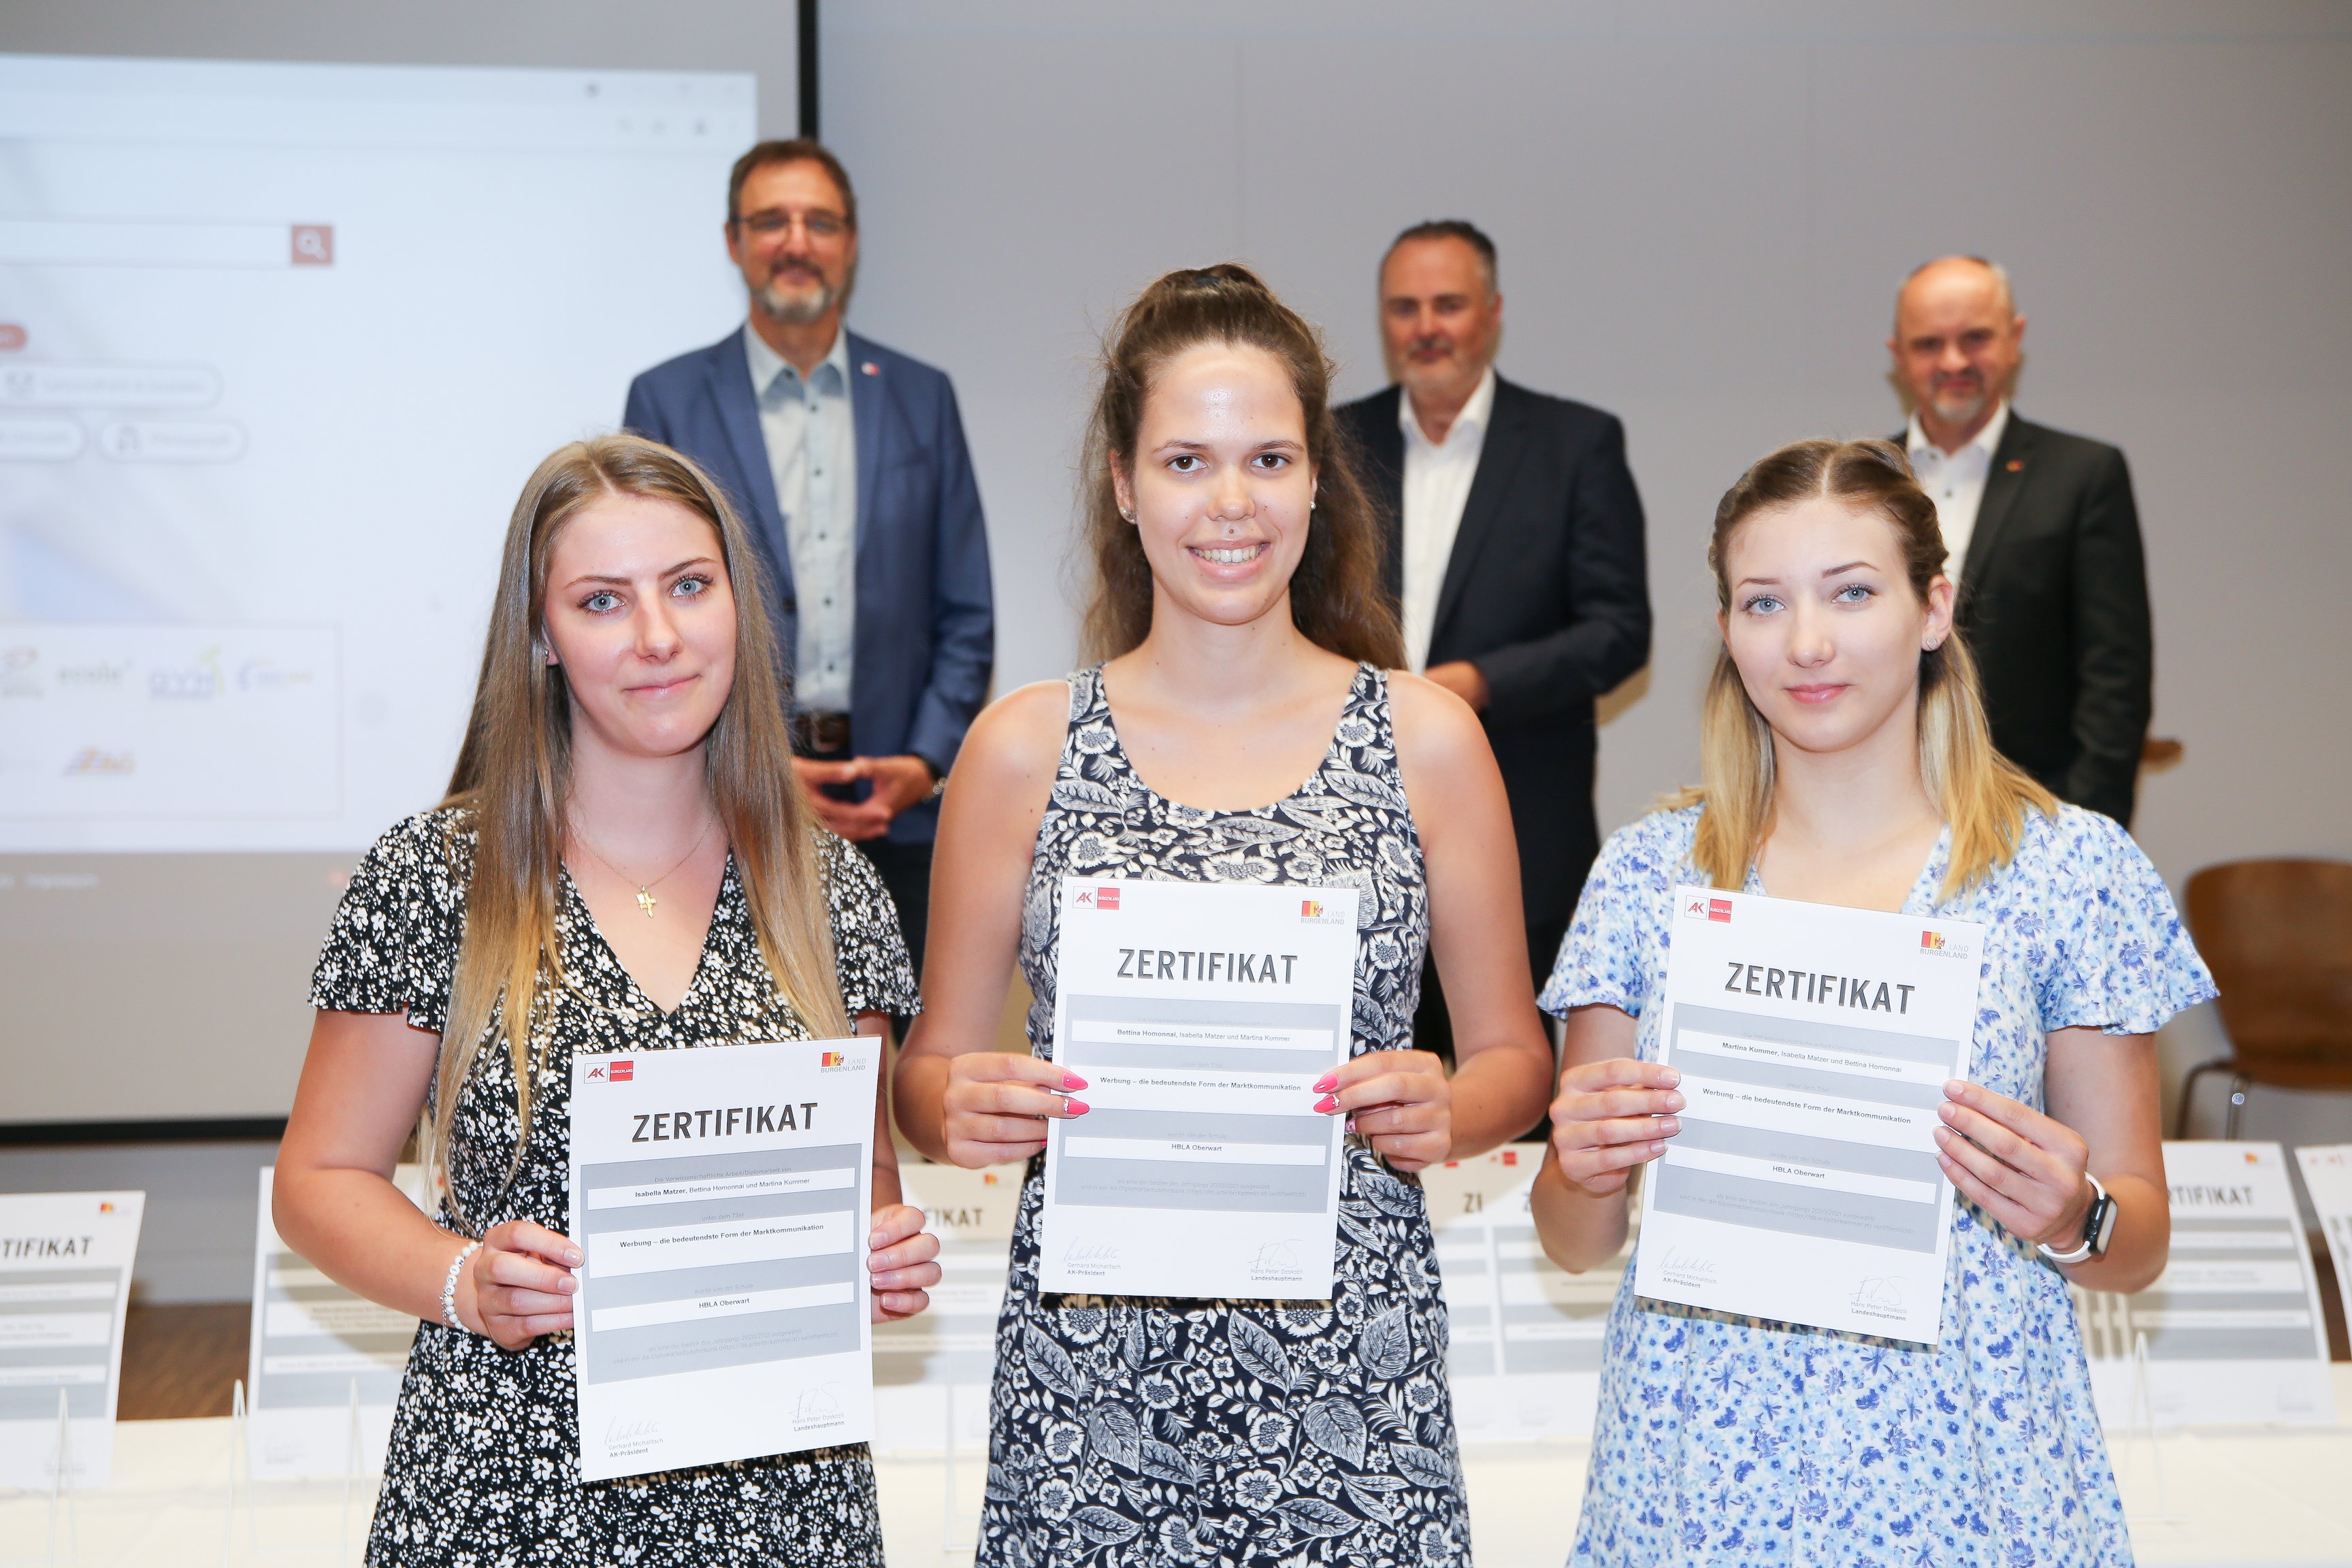 SchülerInnen der Schule "HBLA Oberwart" erhalten Zertifikat für ihre schriftliche Arbeit "Werbung - die bedeutendste Form derr Marktkommunikation".